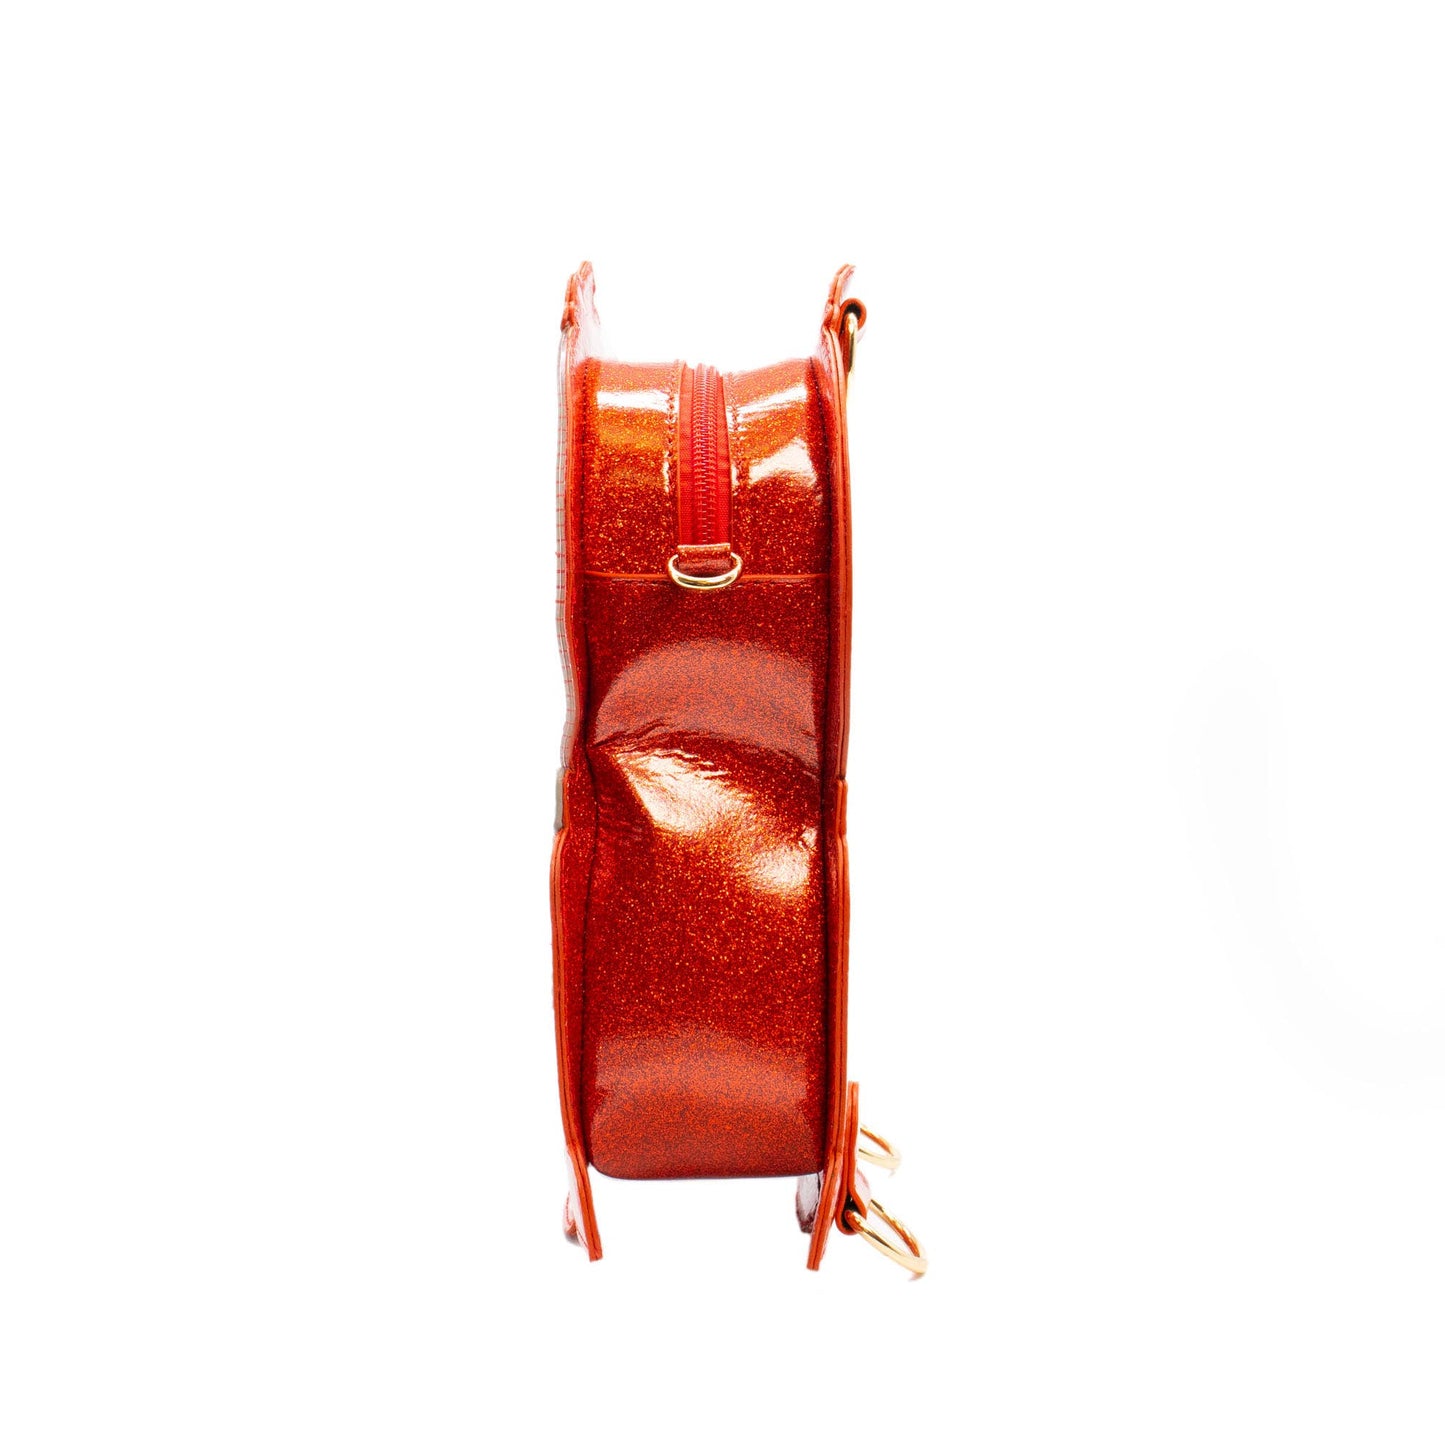 Handbag - Gumball Machine (Red)